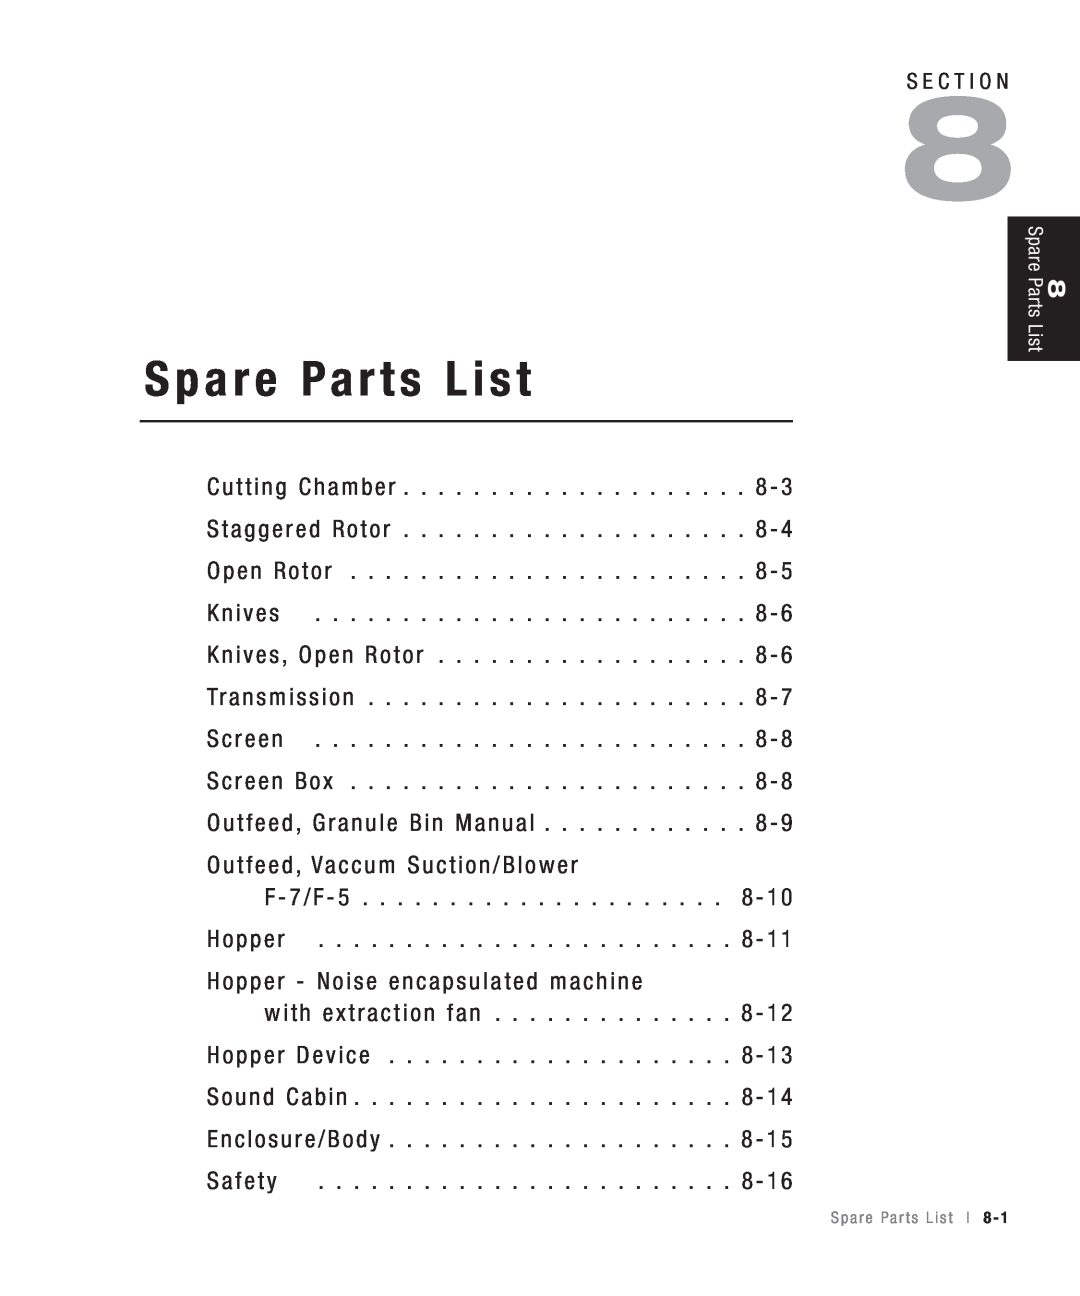 Conair CHS-810 manual Spare Parts List, S a f e t y 